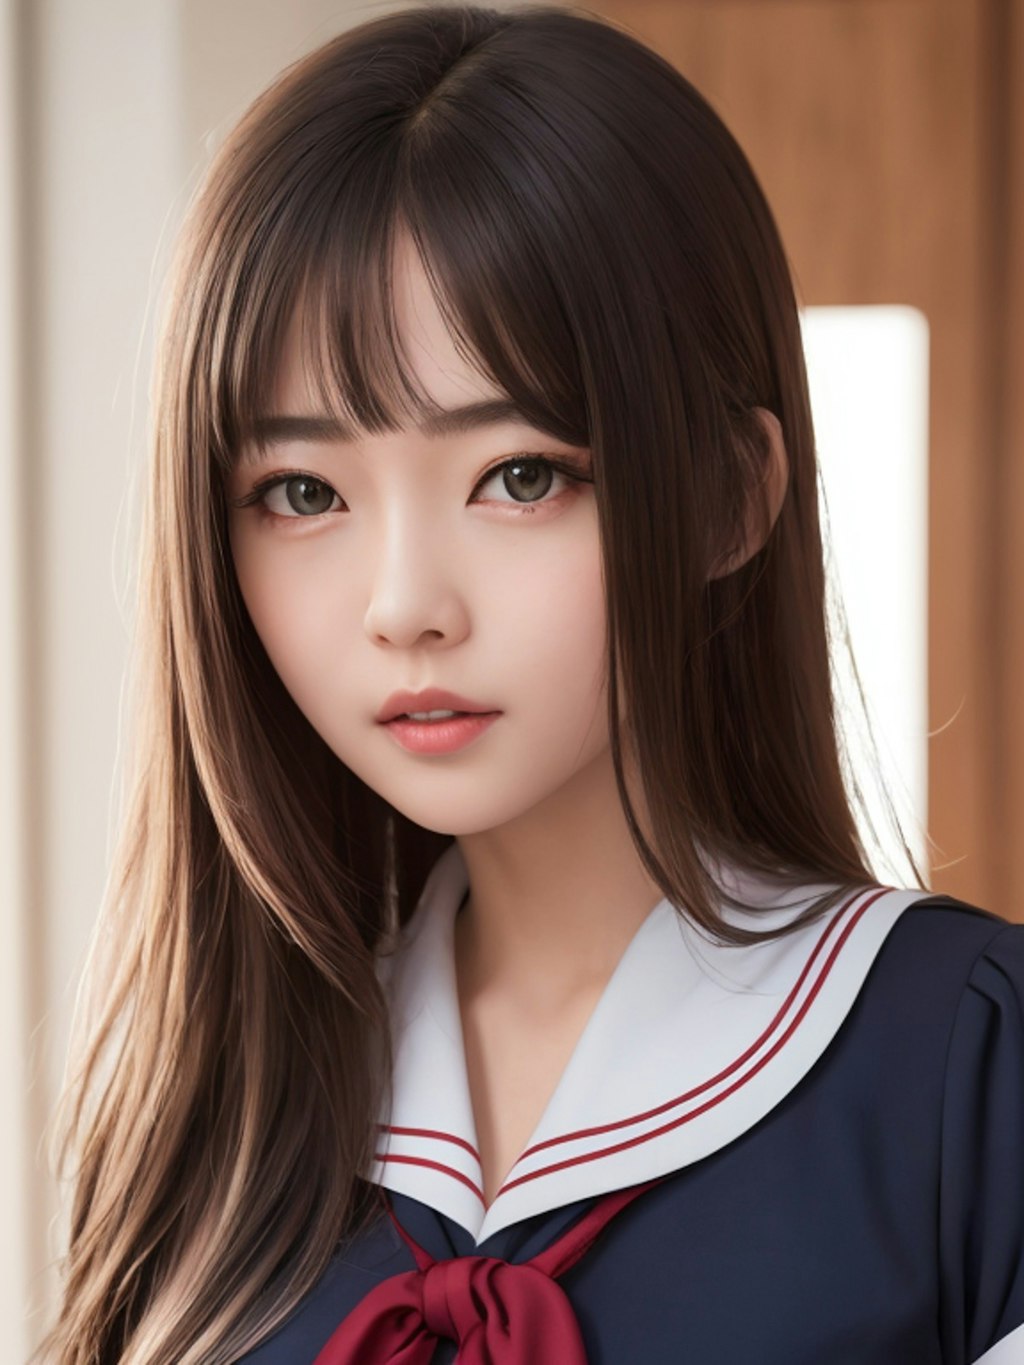 【Bomb.TV】日本のキュート美少女「ワッターメルン」写真集 - 微图坊